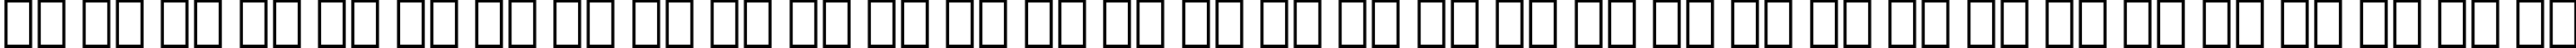 Пример написания русского алфавита шрифтом Folio Bold Condensed BT